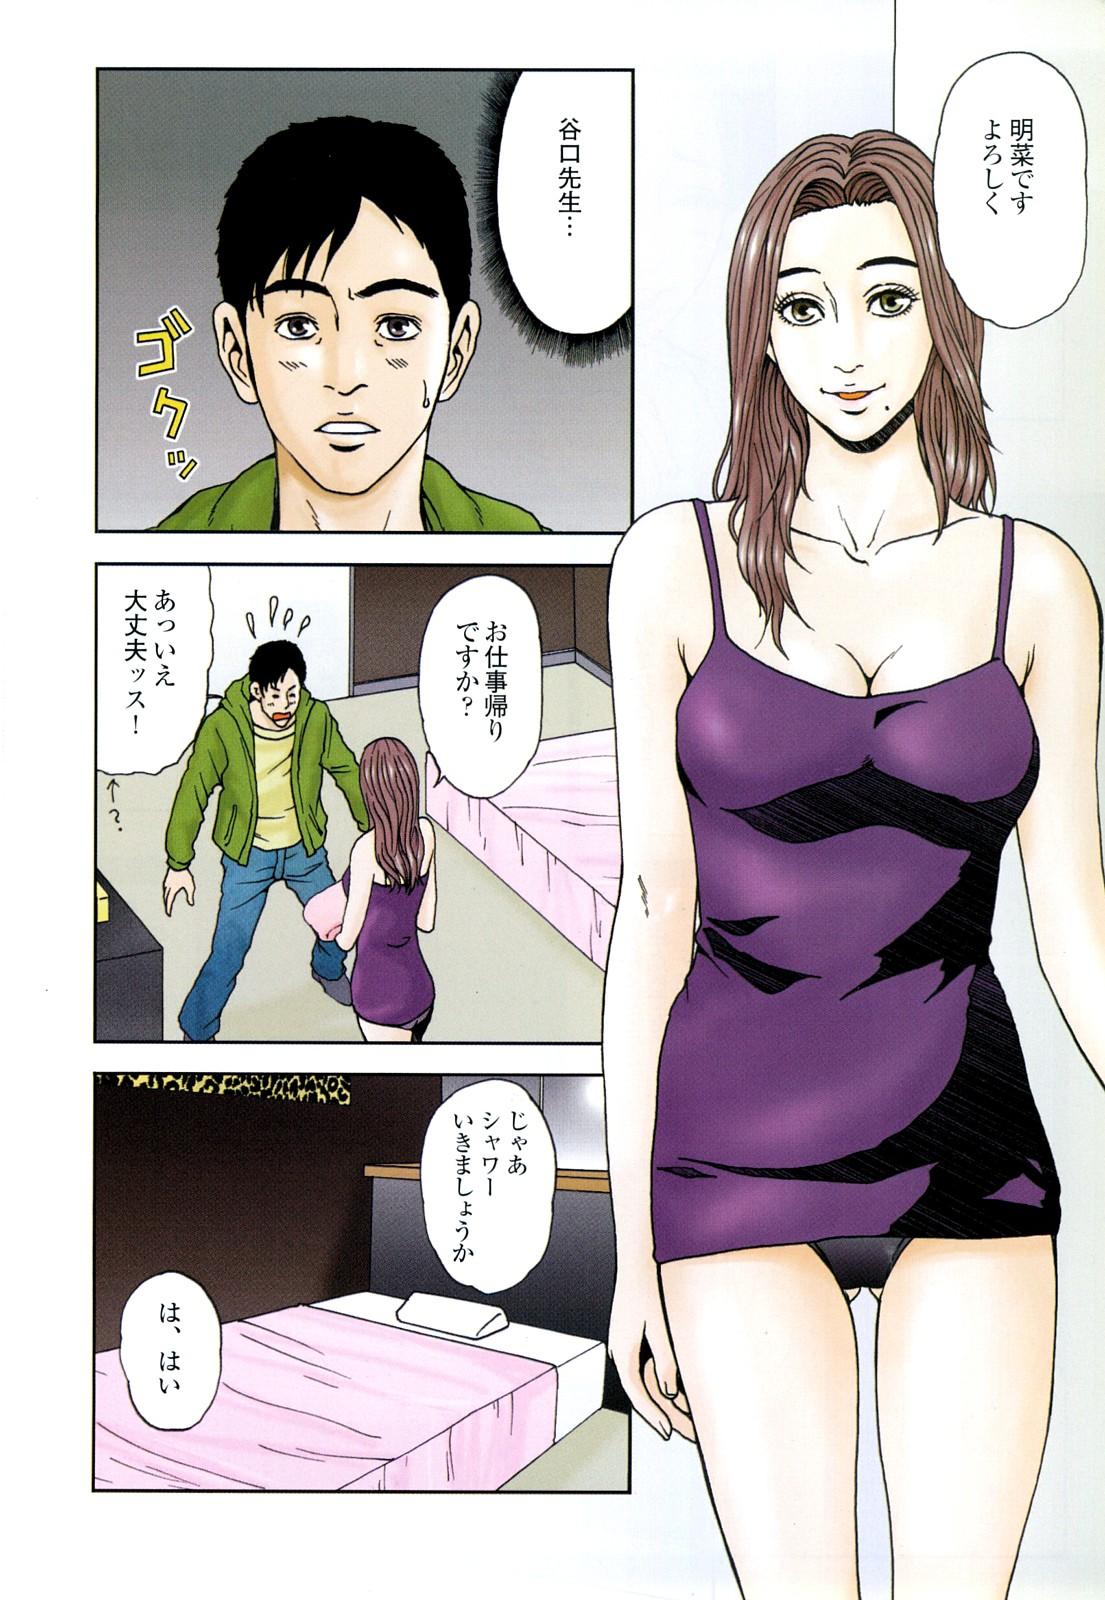 コミック裏モノJAPAN Vol.18 今井のりたつスペシャル号 13